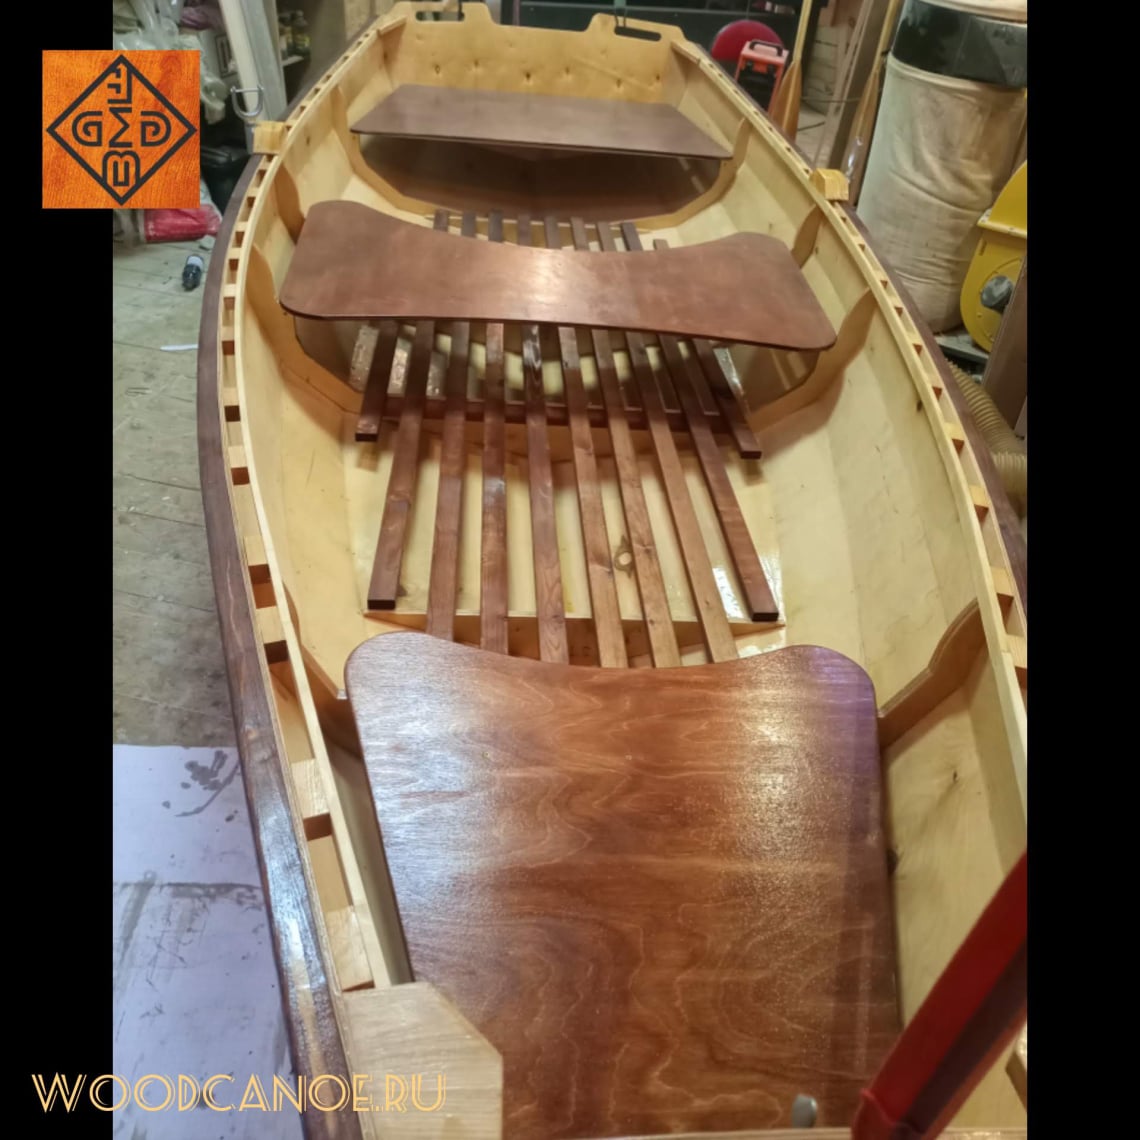 Как сделать деревянную лодку своими руками из досок пошагово